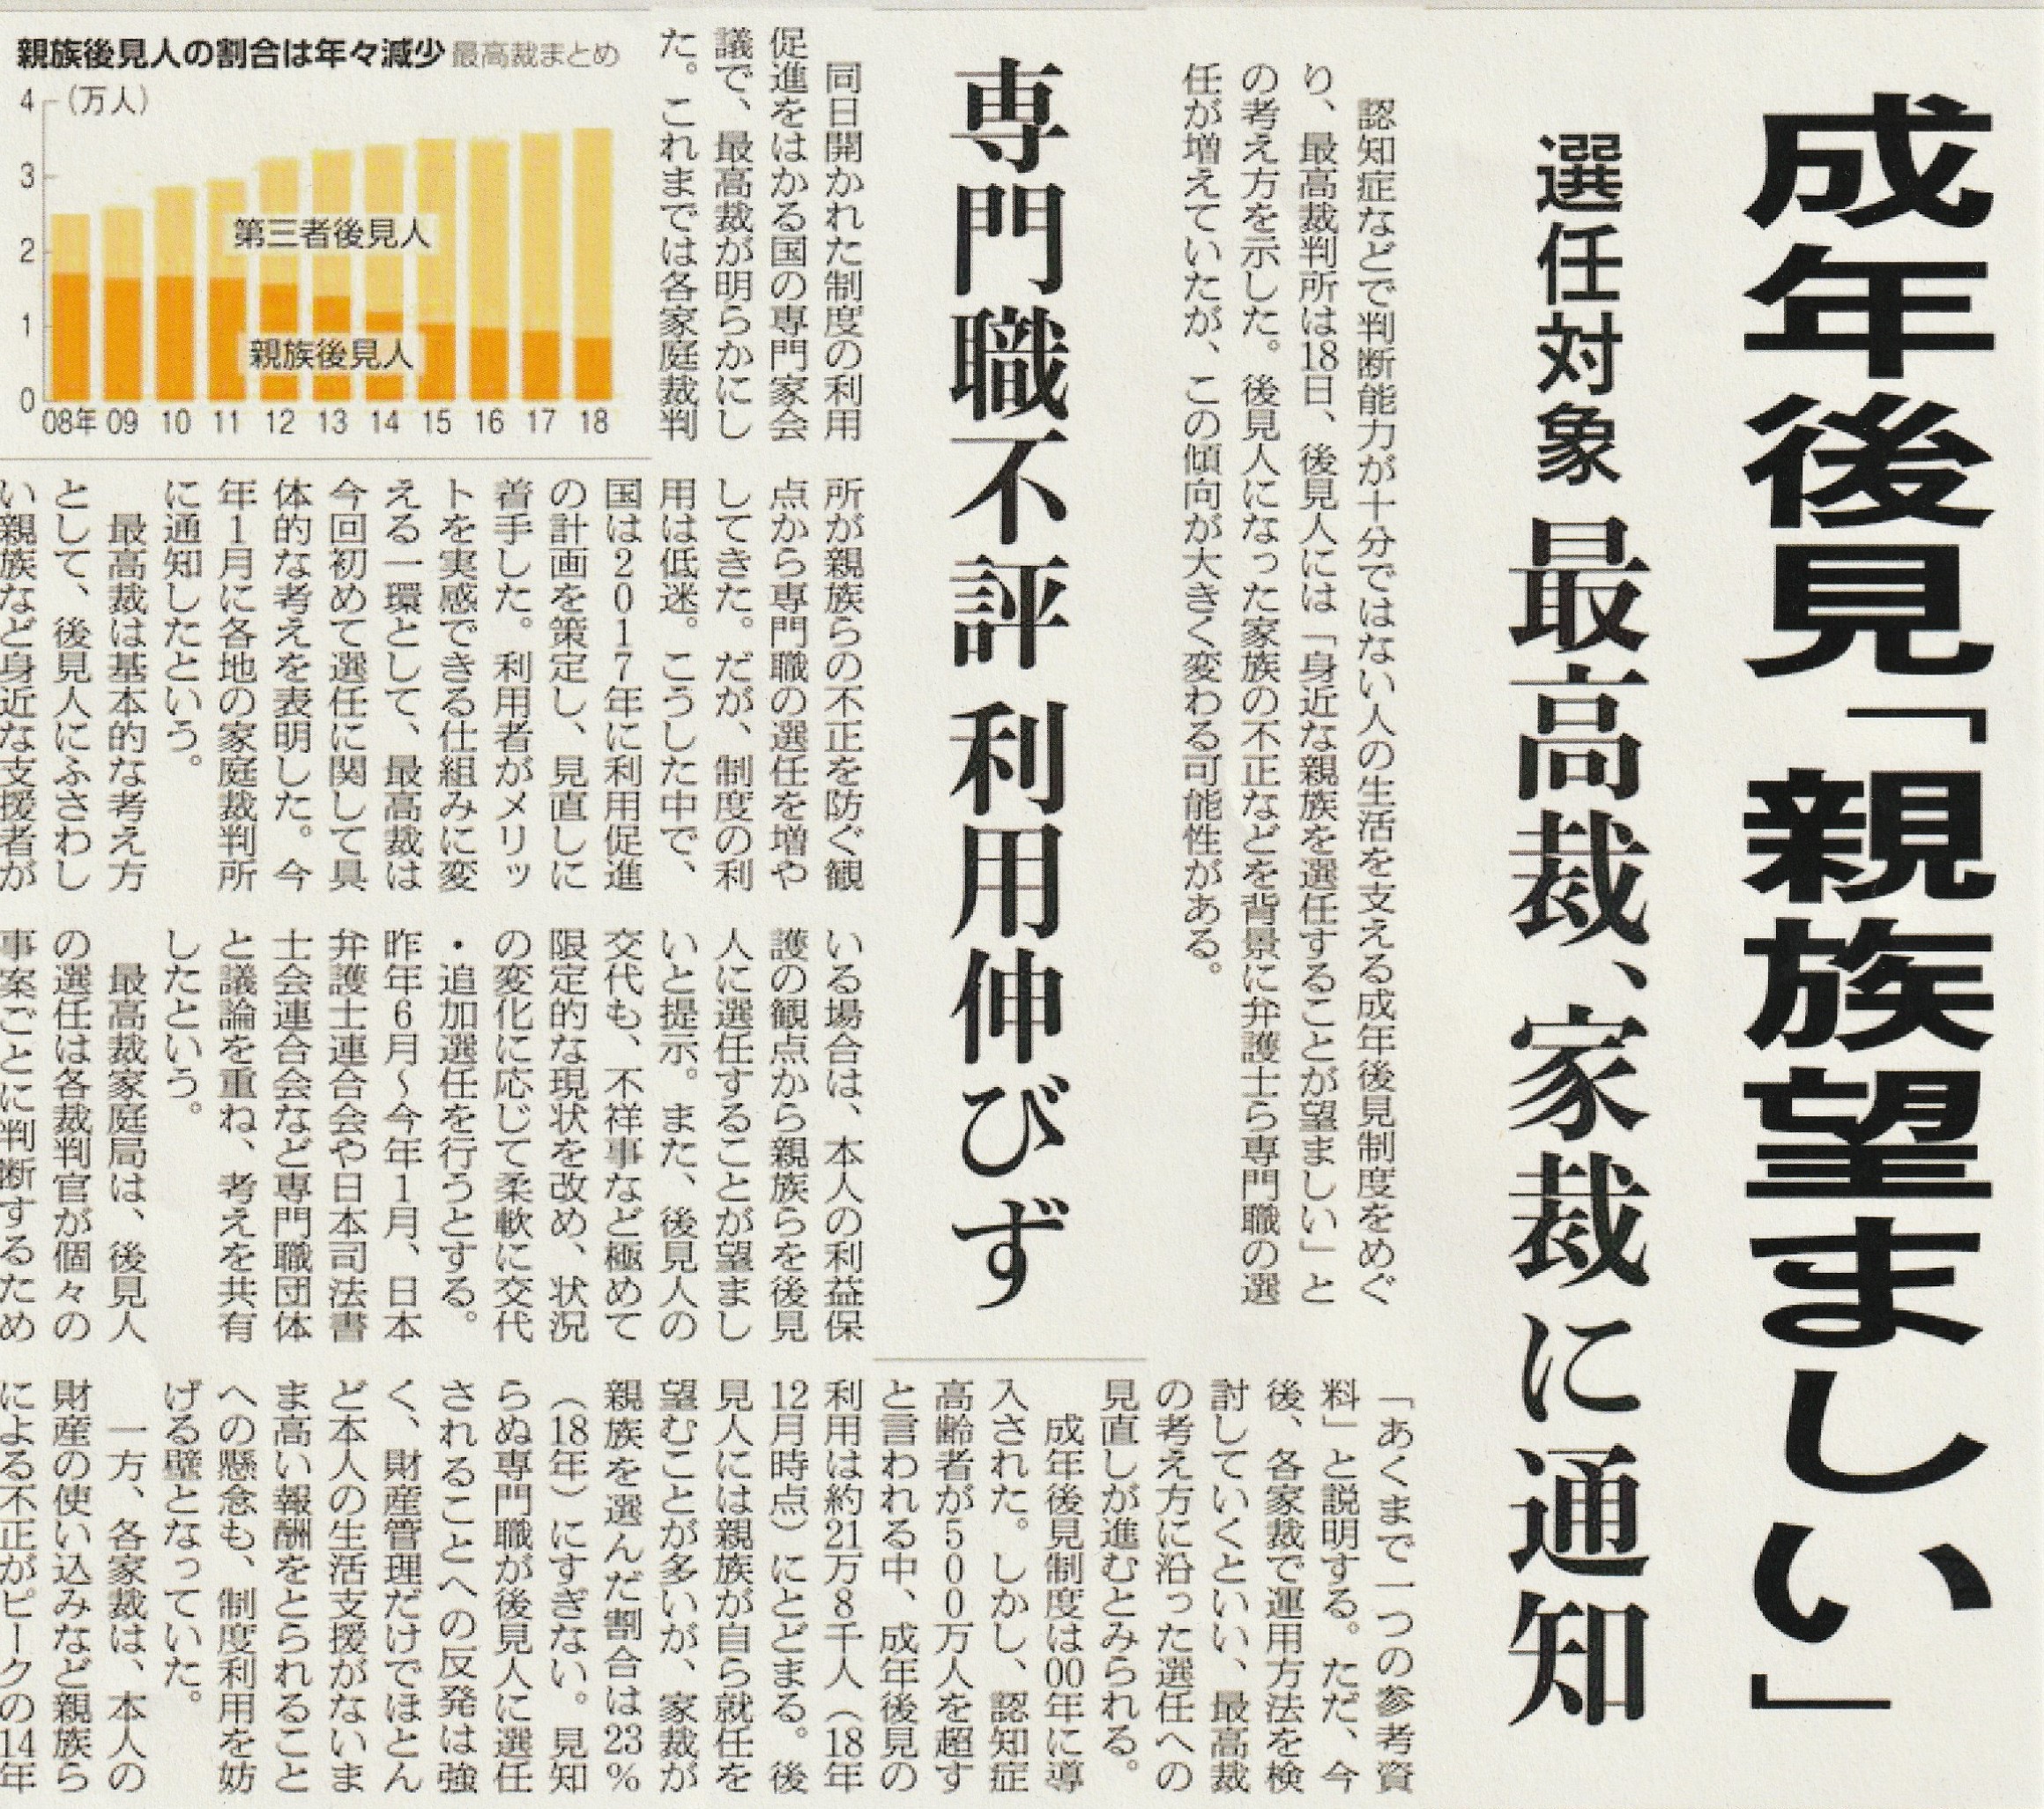 成年後見制度 のなぞ１ 家裁の役割とは 静岡経済新聞